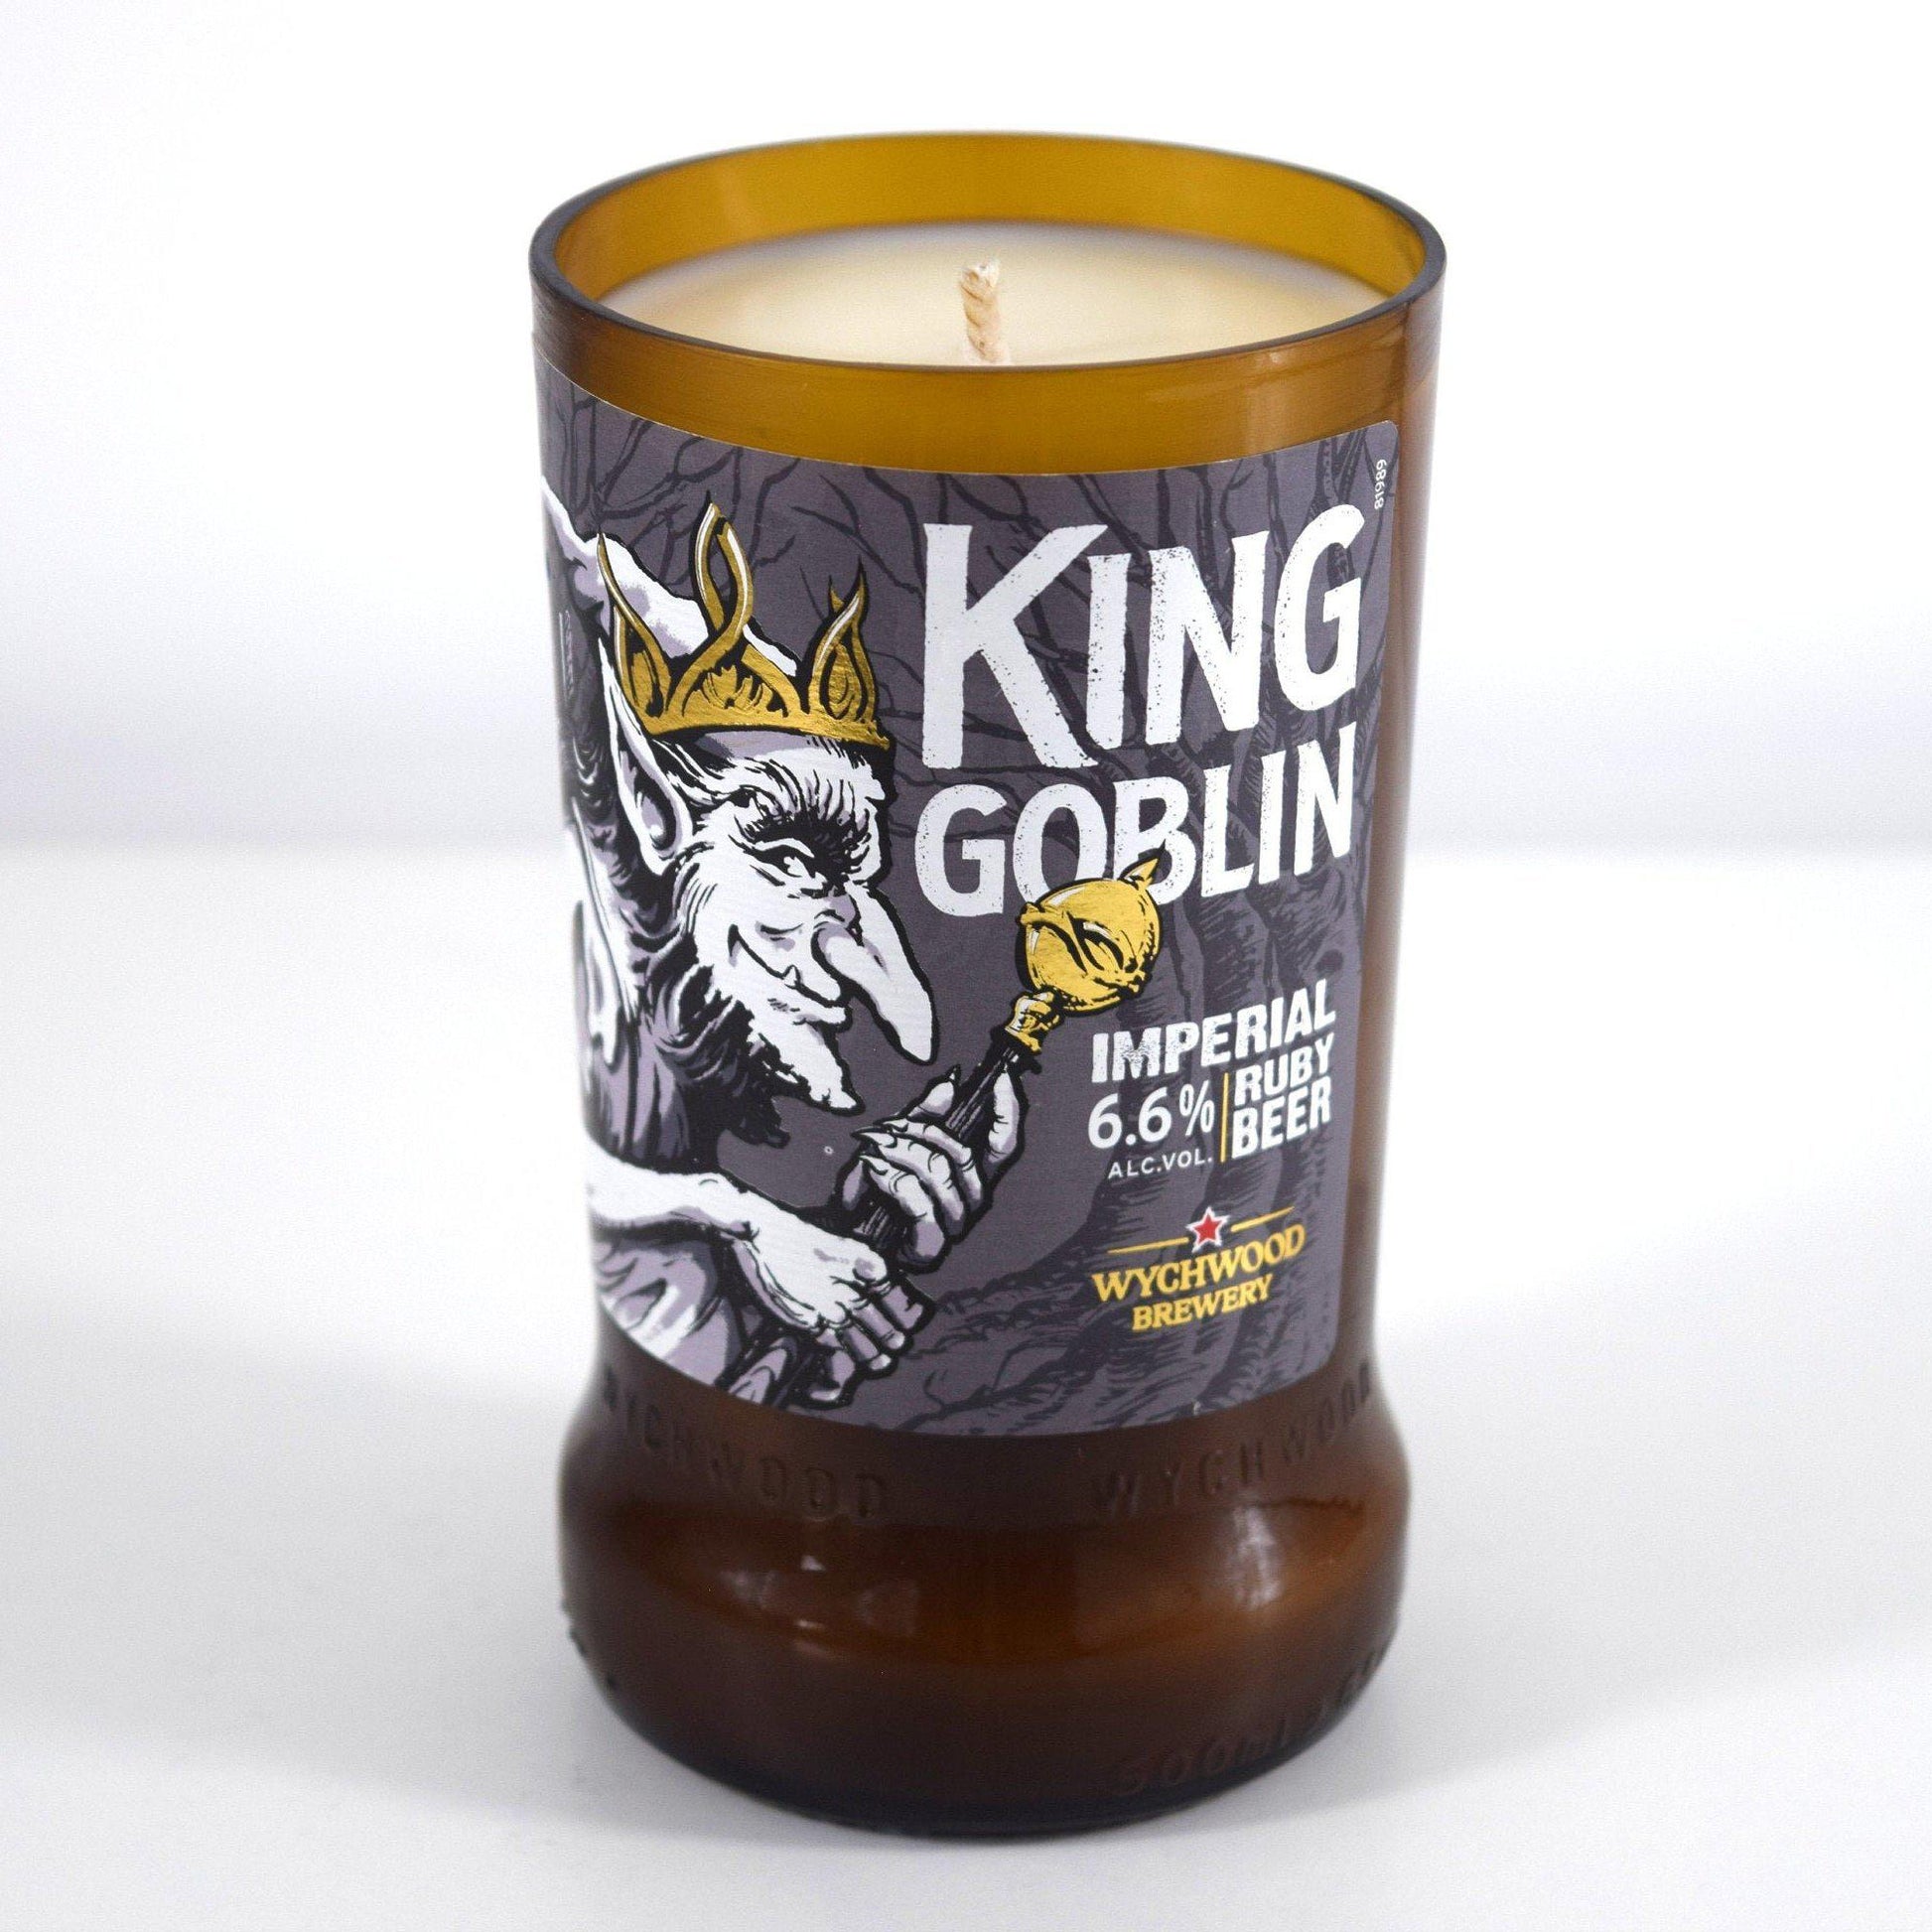 King Goblin Ale Craft Beer Bottle Candle-Beer & Ale Bottle Candles-Adhock Homeware